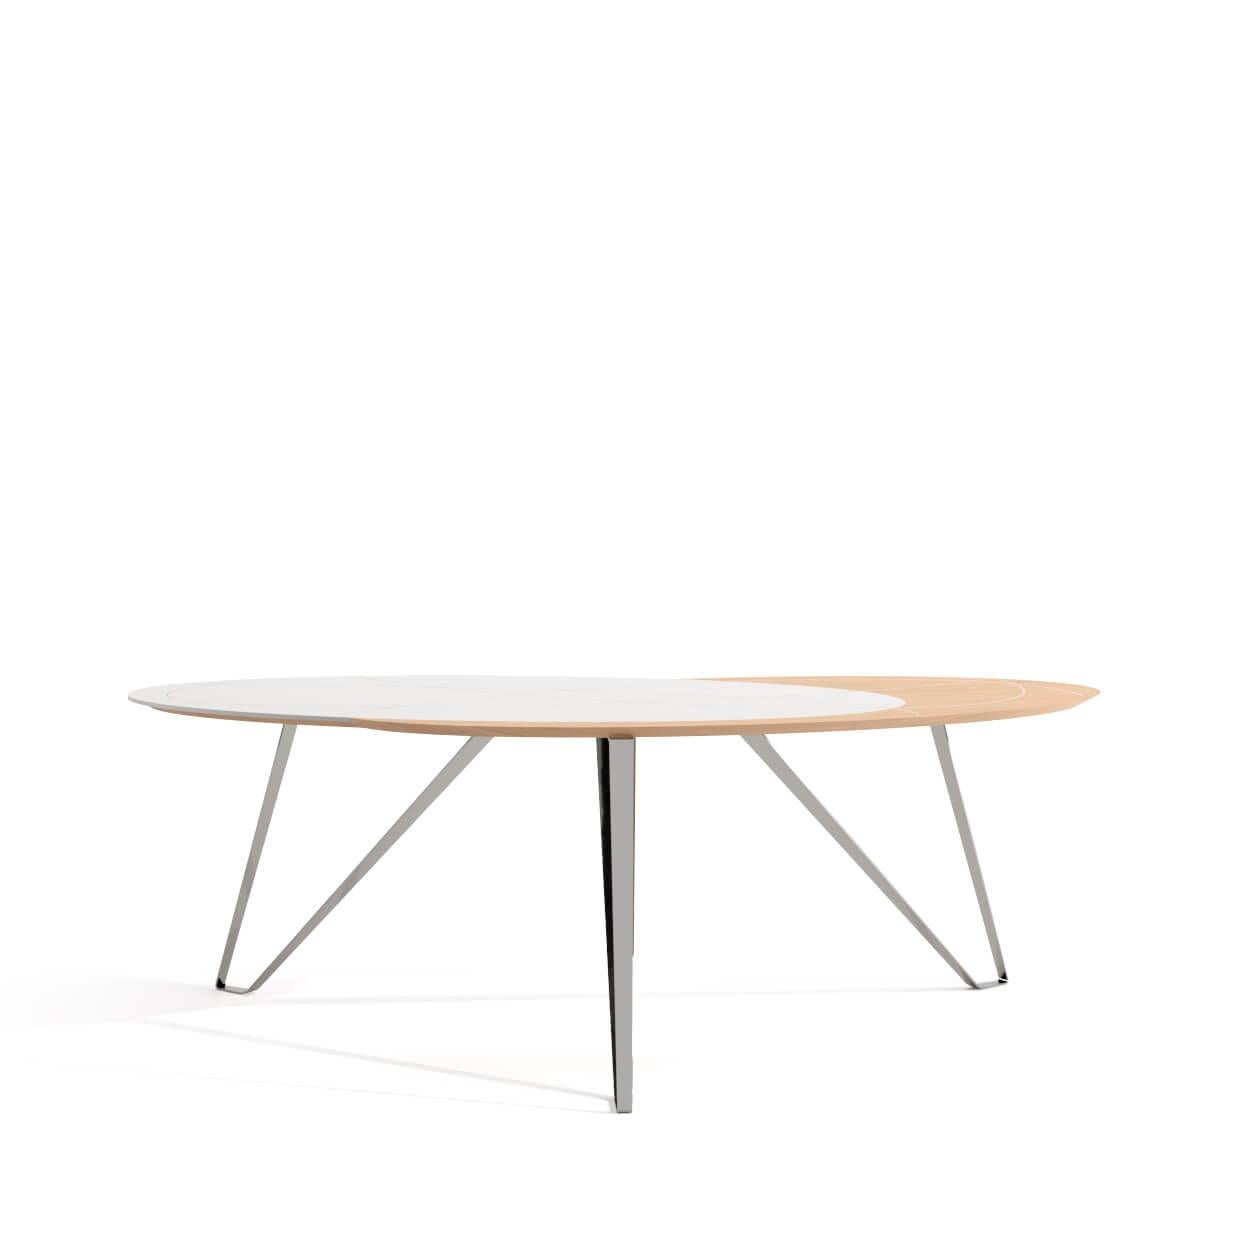 La collection Orbit est parfaite pour les intérieurs décontractés, pleins de lumière et de personnalité. Le Home Desk a une forme ovale, avec du bois de chêne et du bois laqué blanc interconnectés sur son plateau. Les pieds sont en acier inoxydable